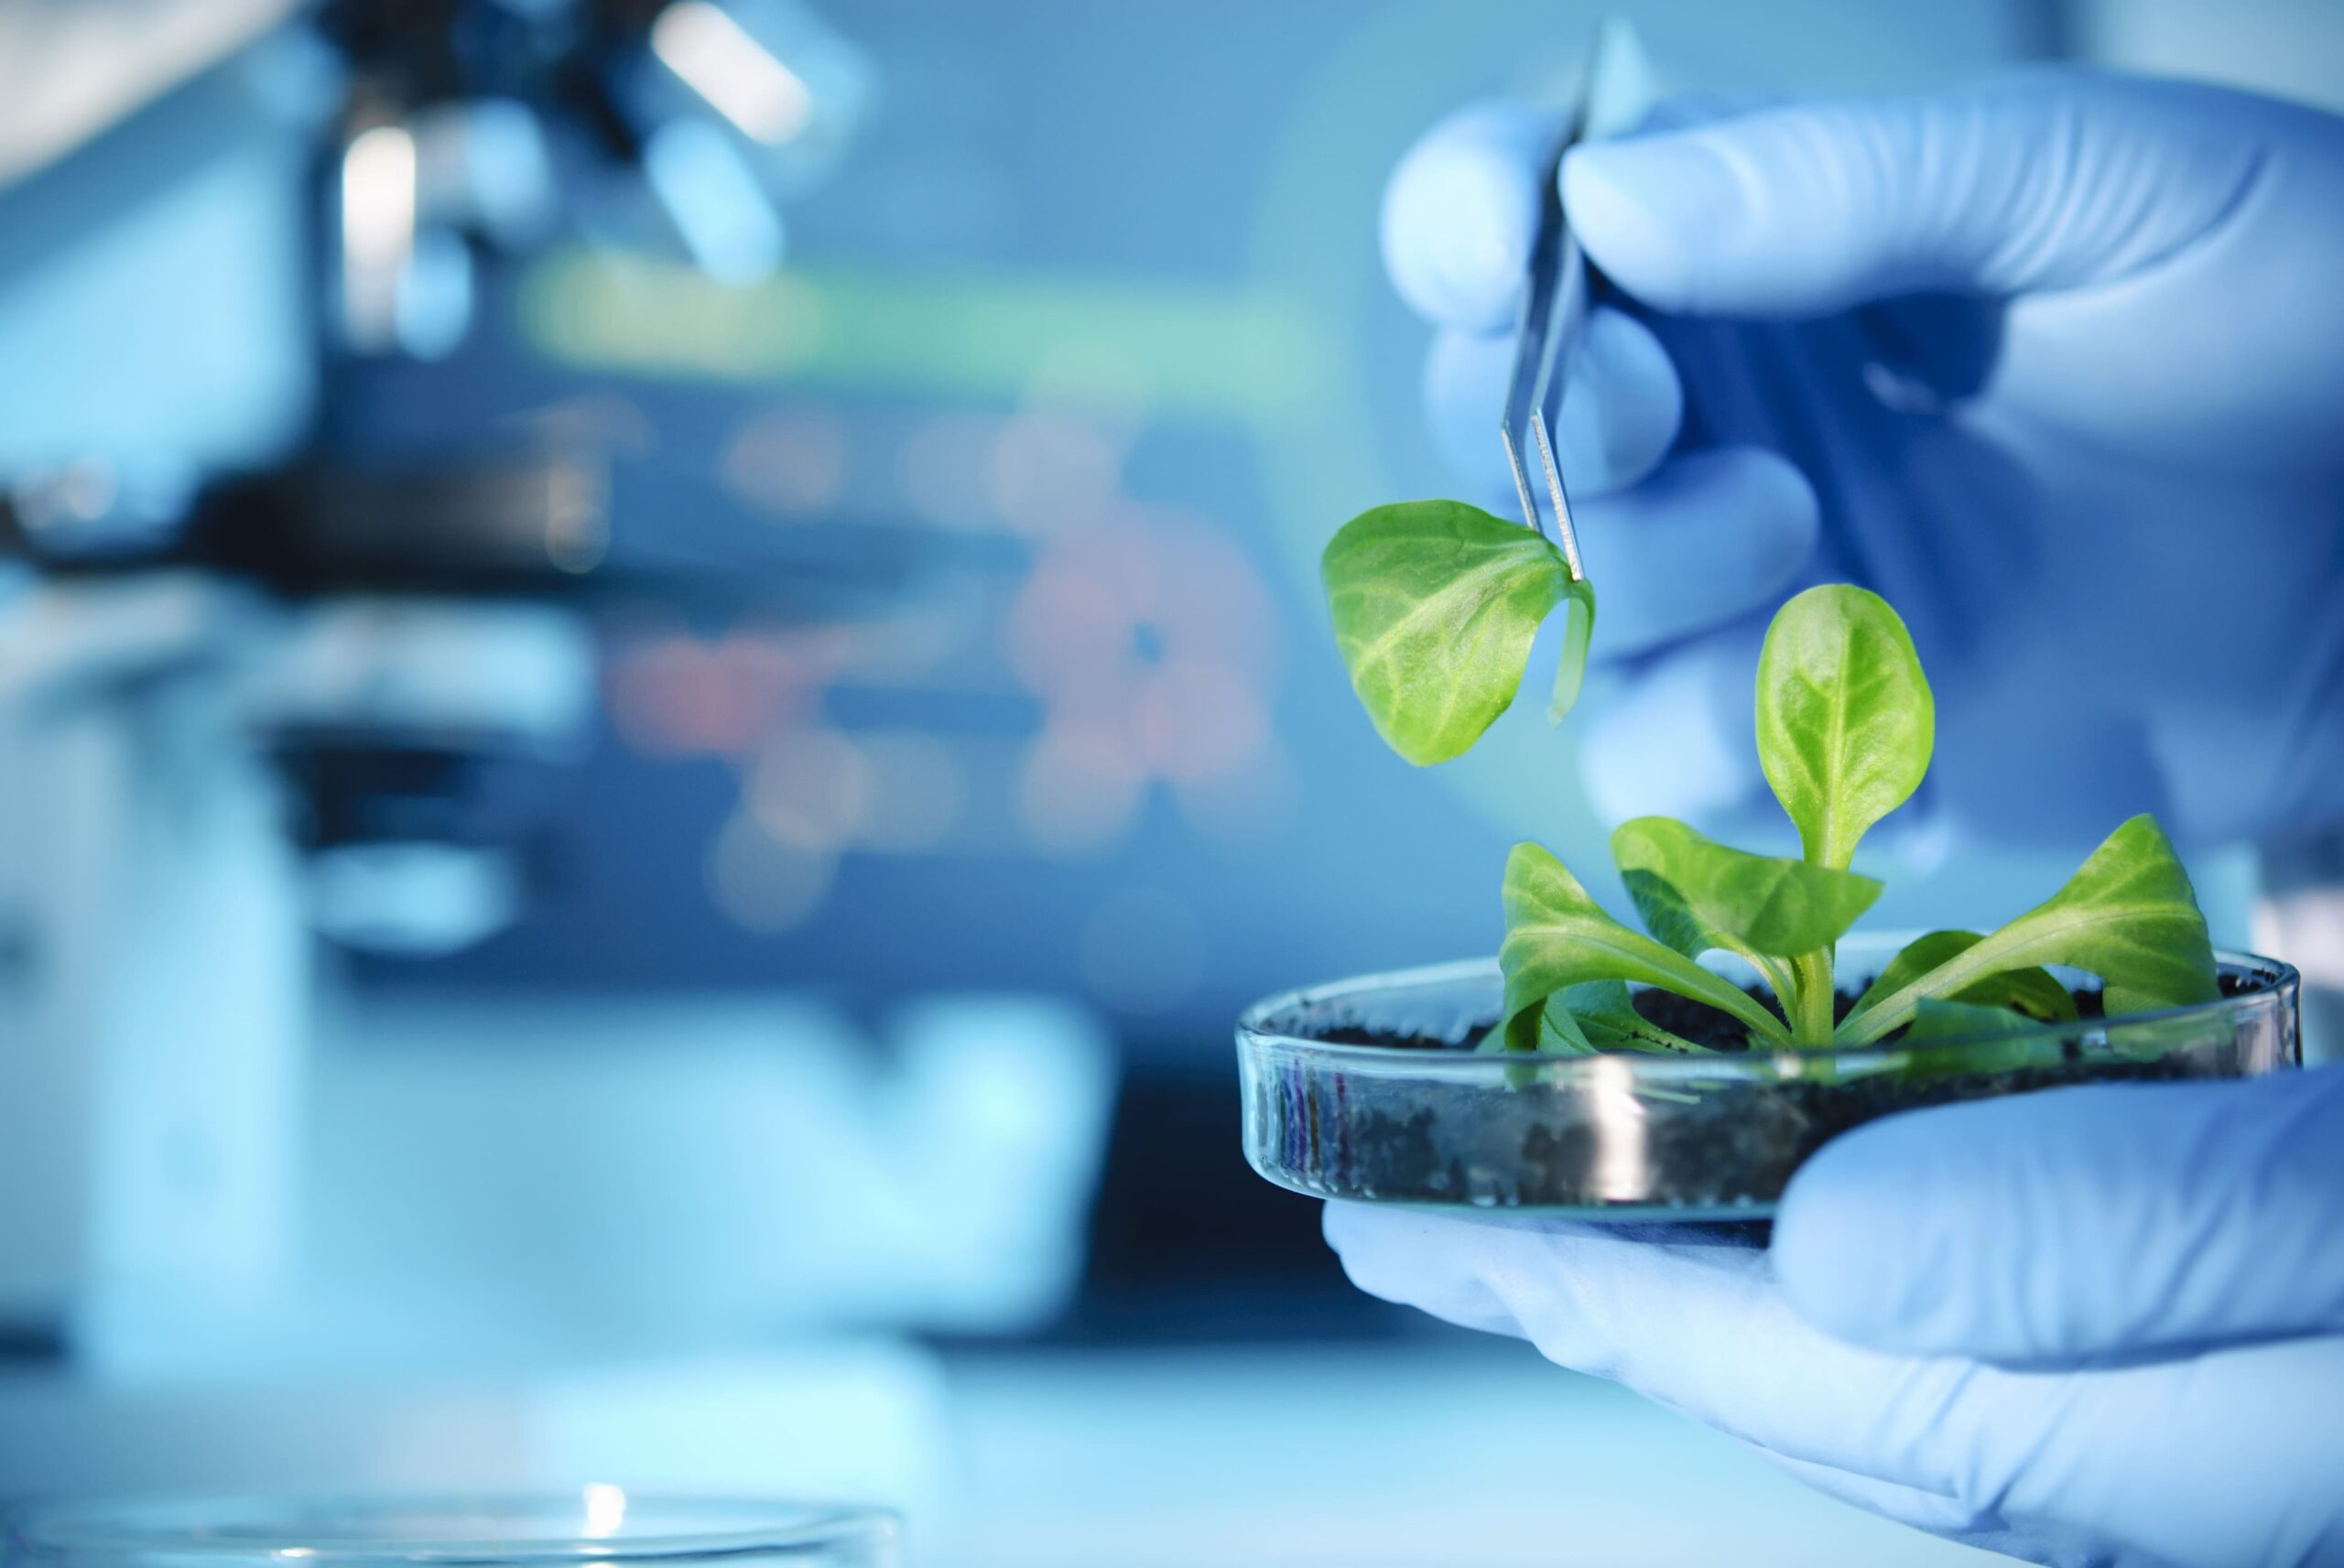 Le biotecnologie contribuiscono a preservare le risorse ambientali